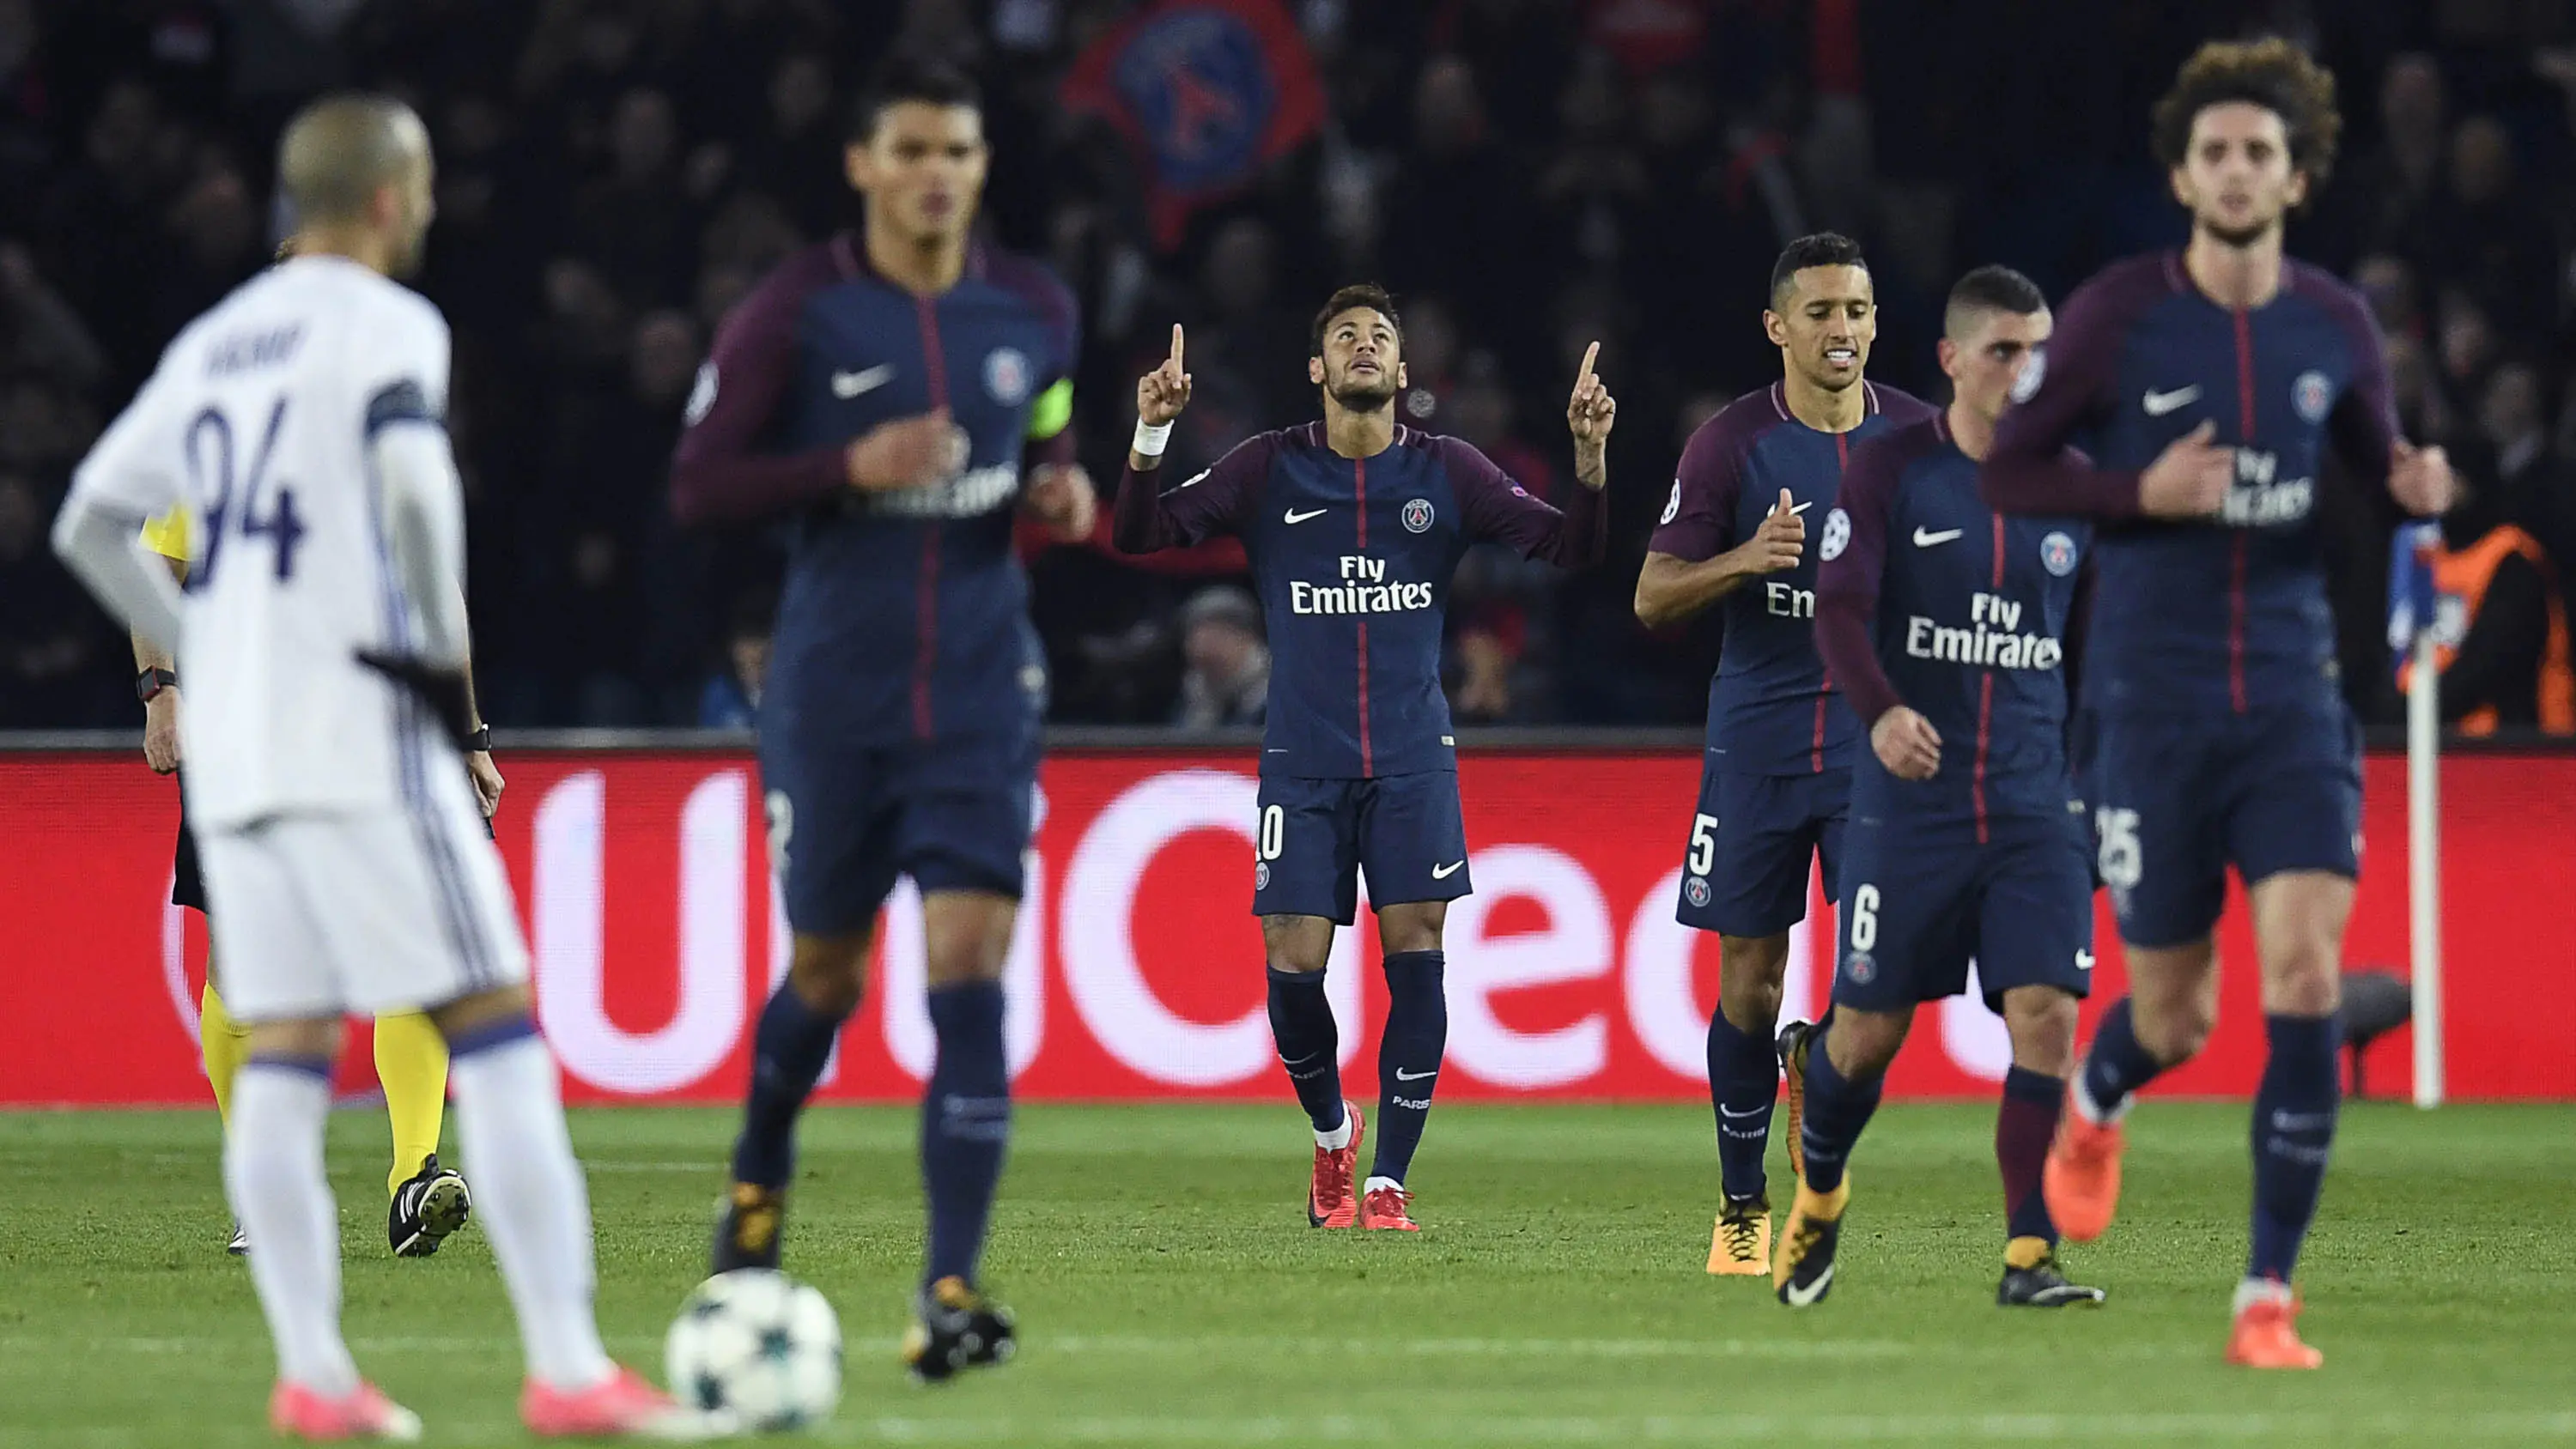 Gelandang PSG, Neymar, merayakan gol yang dicetaknya ke gawang Anderlecht pada laga Liga Champions di Stadion Parc des Princes, Paris, Selasa (31/10/2017). PSG menang 5-0 atas Anderlecht. (AFP/Christophe Simon)